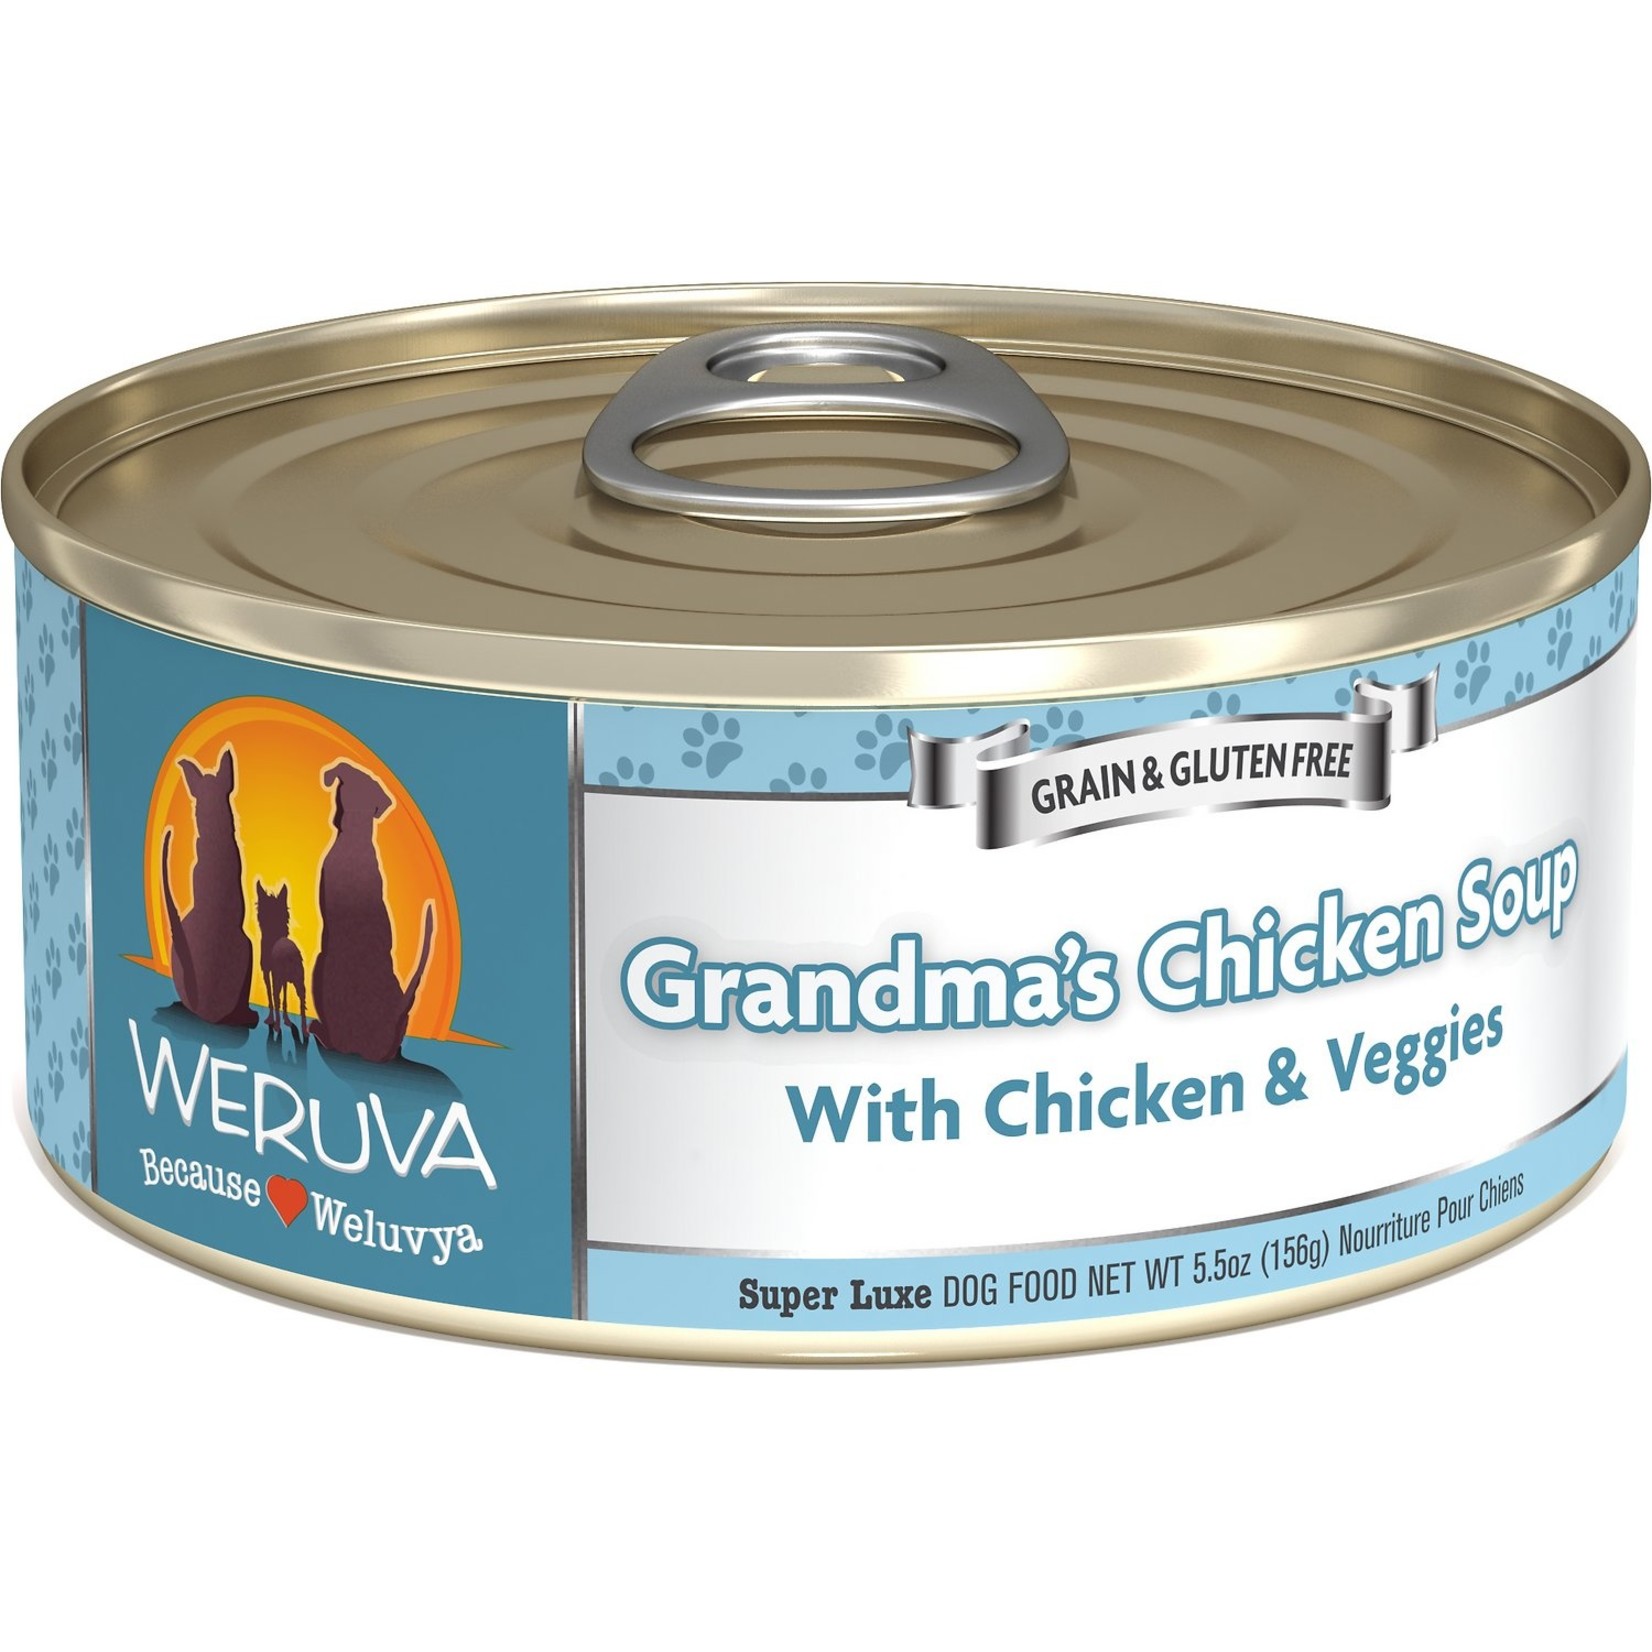 Weruva Weruva Classic Dog - Grandma's Chicken Soup with Chicken & Veggies